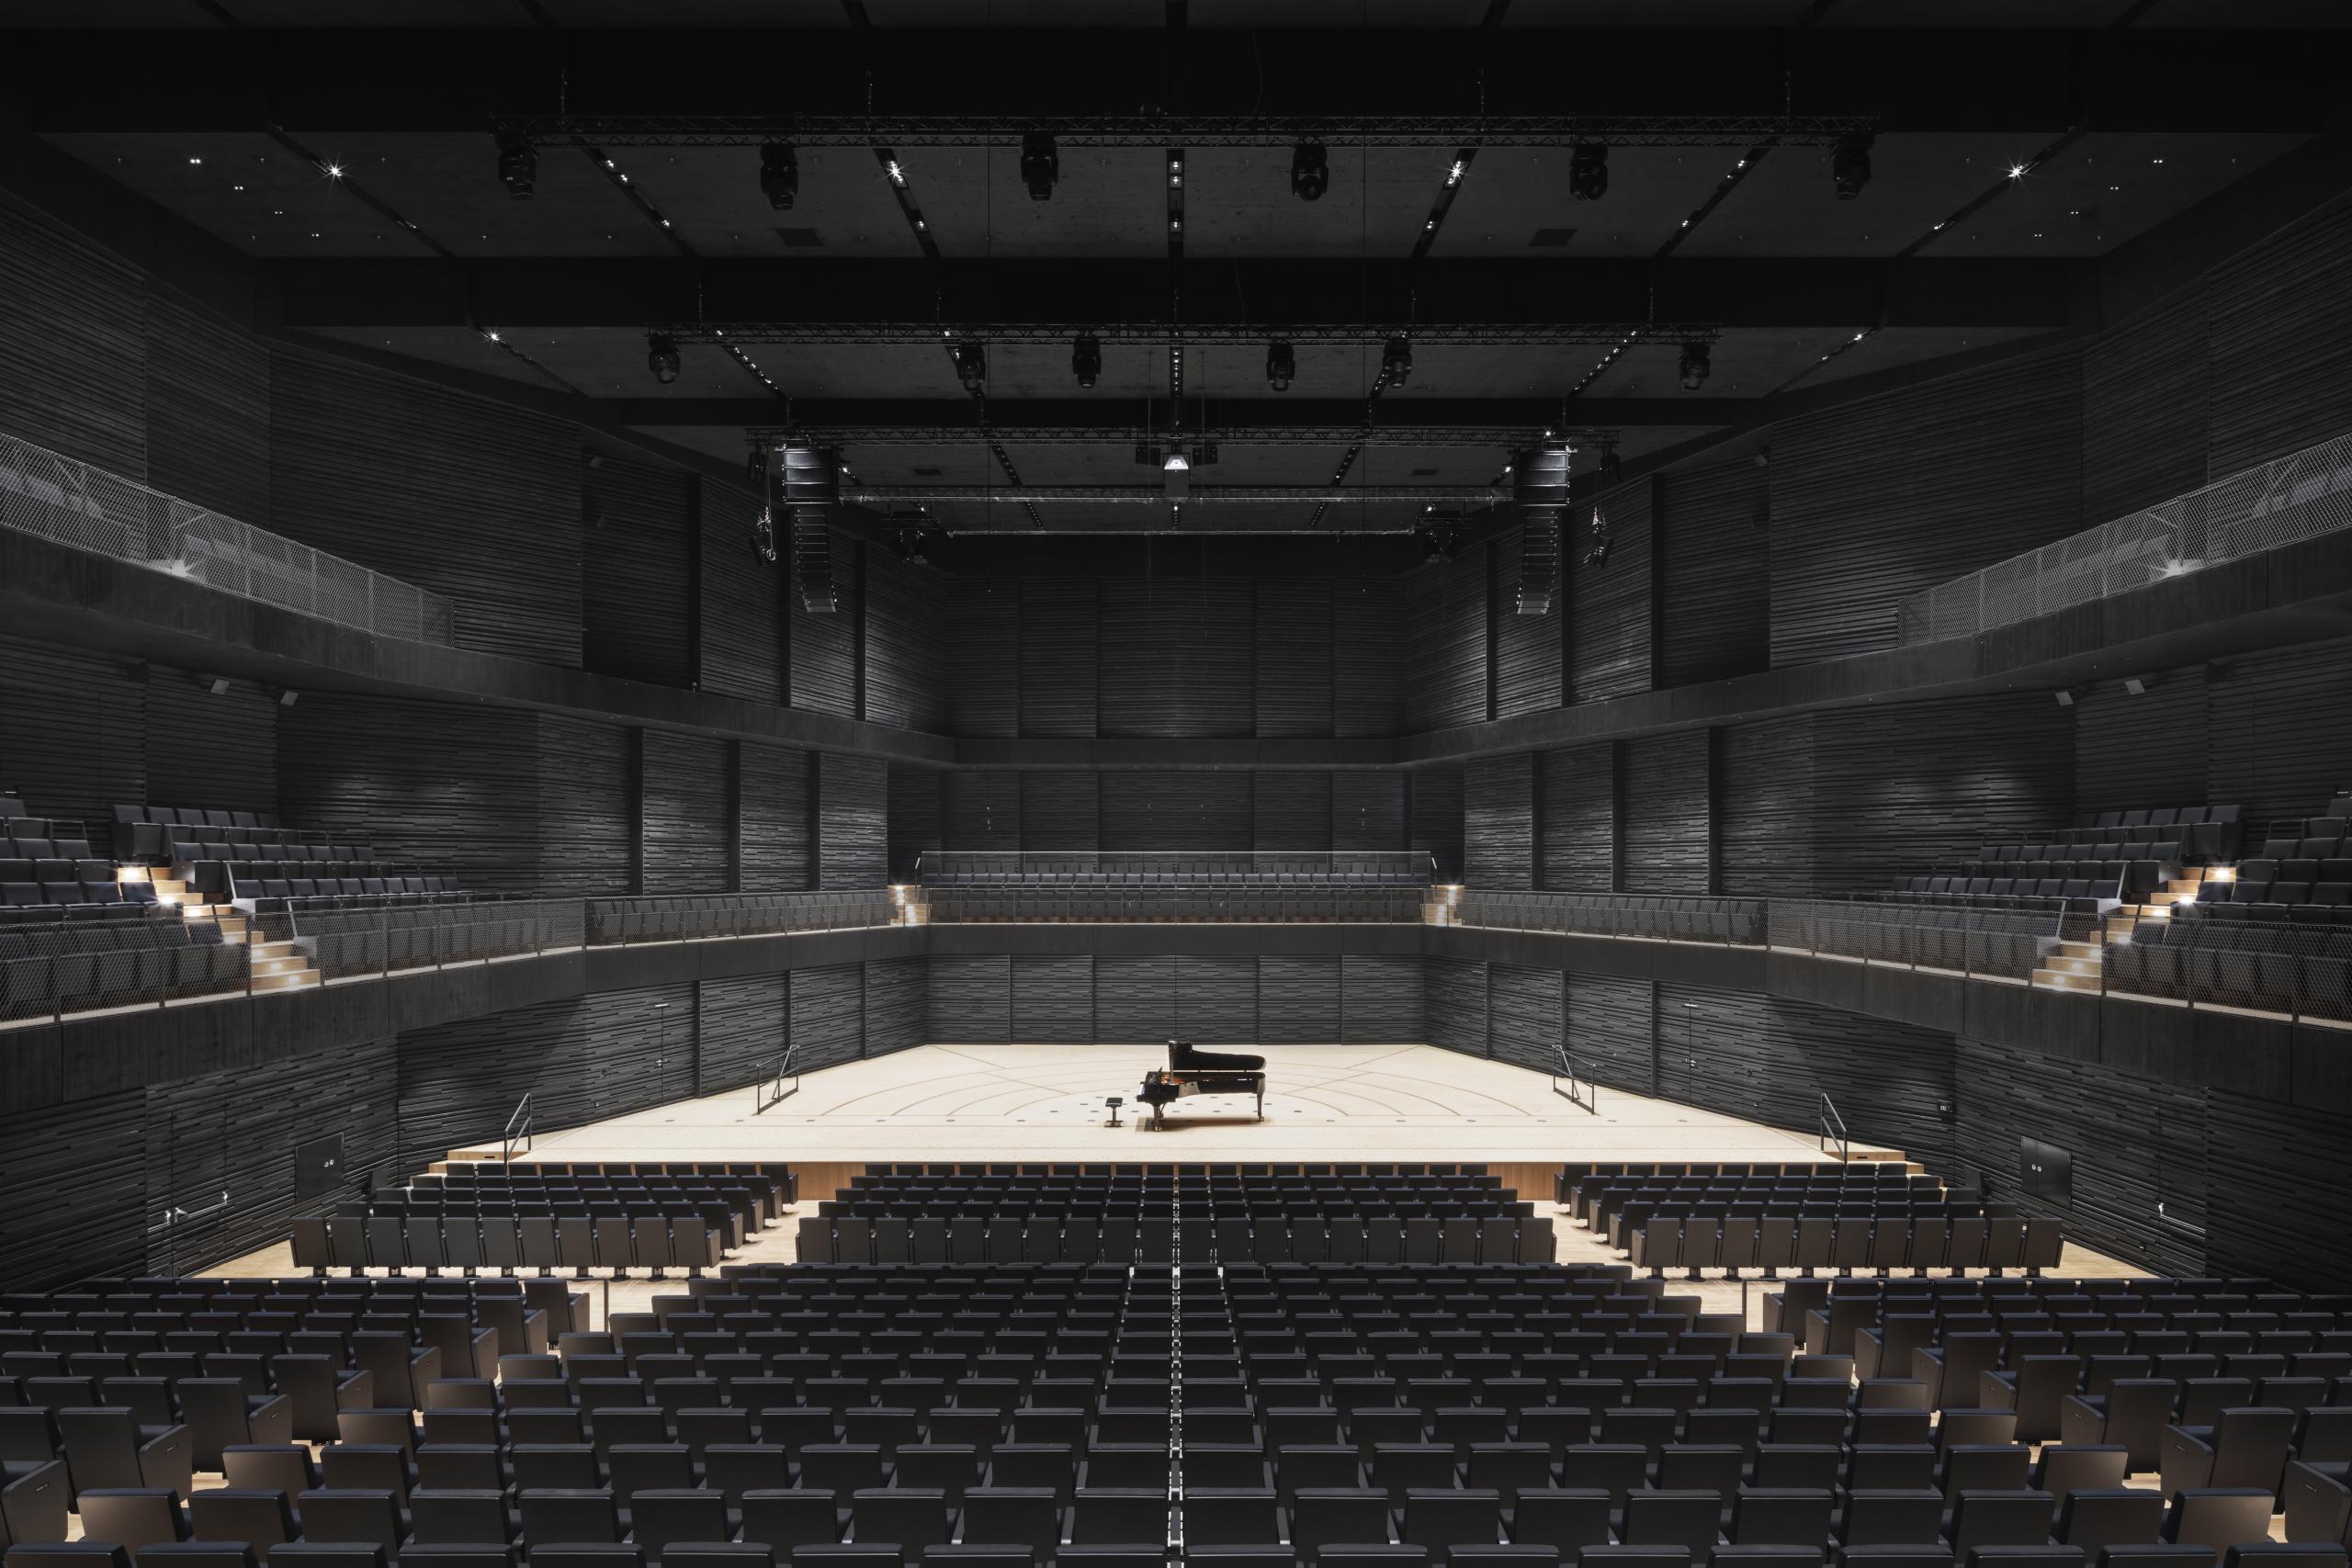 Leerer Konzertsaal mit schwarzer Holzvertäfelung, der Boden und die Bühne sind aus hellem Holz, schwarze Bestuhlung, auf der Bühne ein Flügel